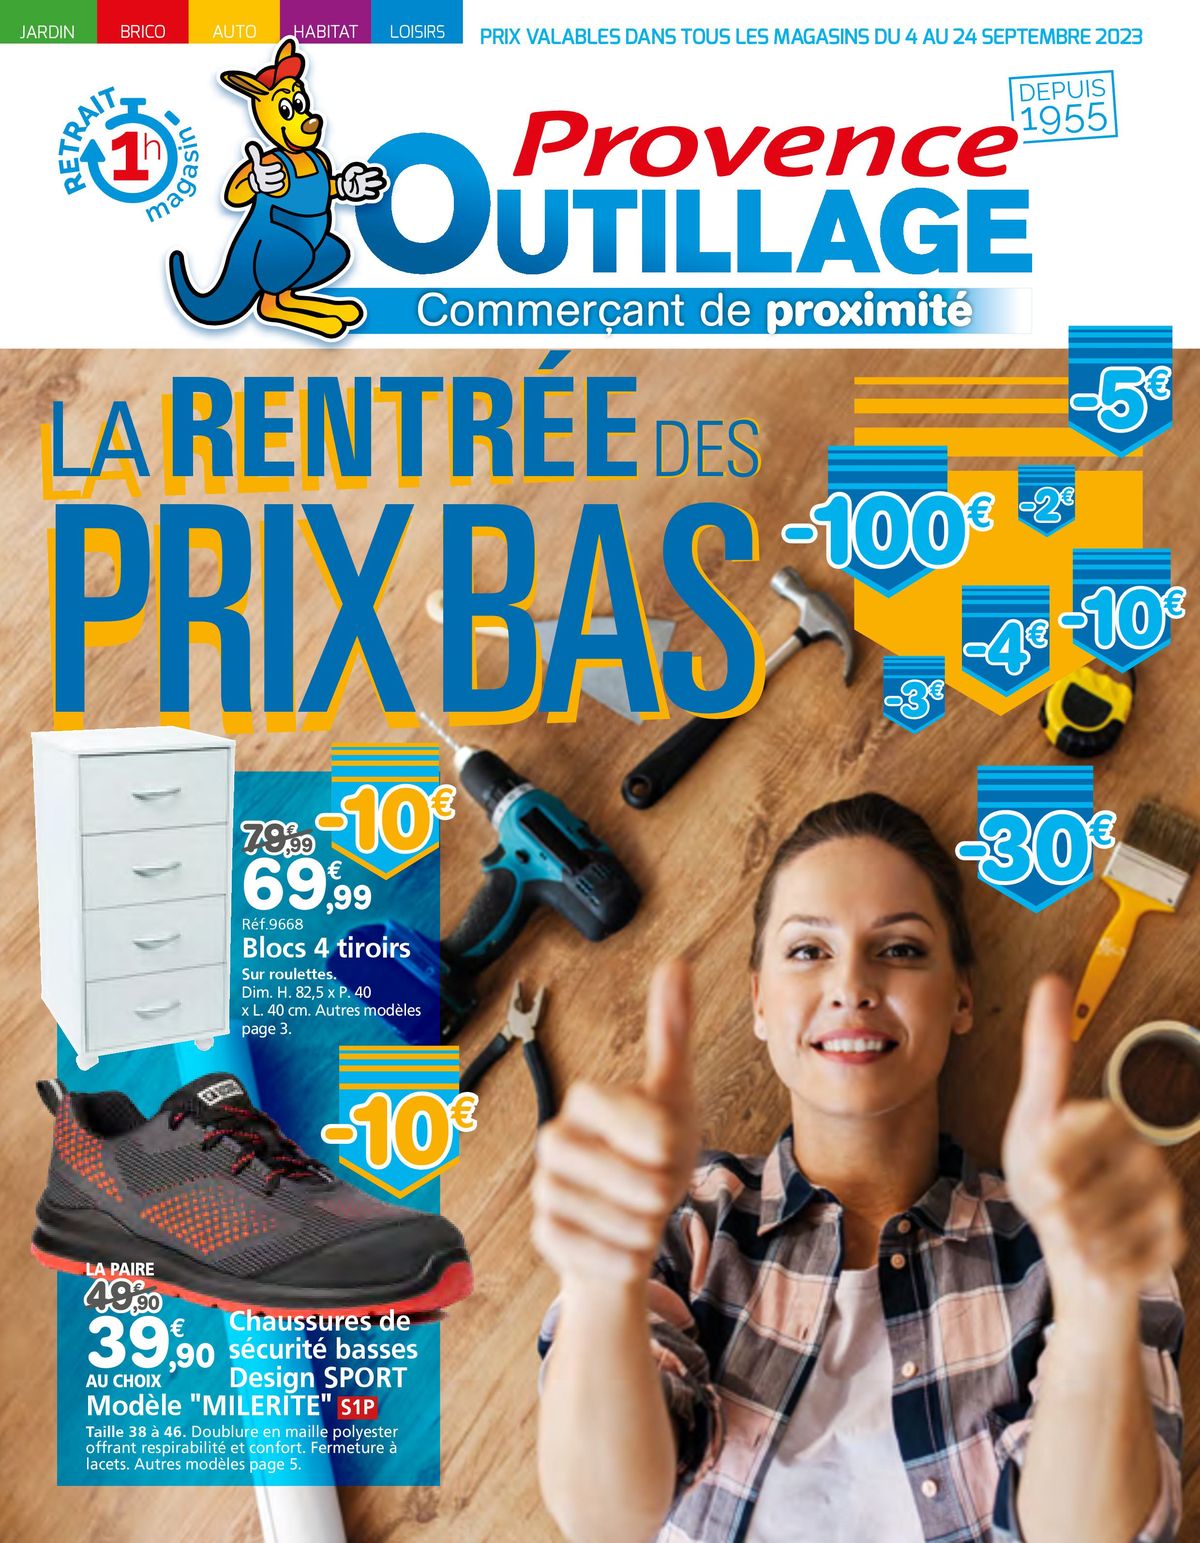 Catalogue LA RENTRÉE DES PRIXBAS, page 00001